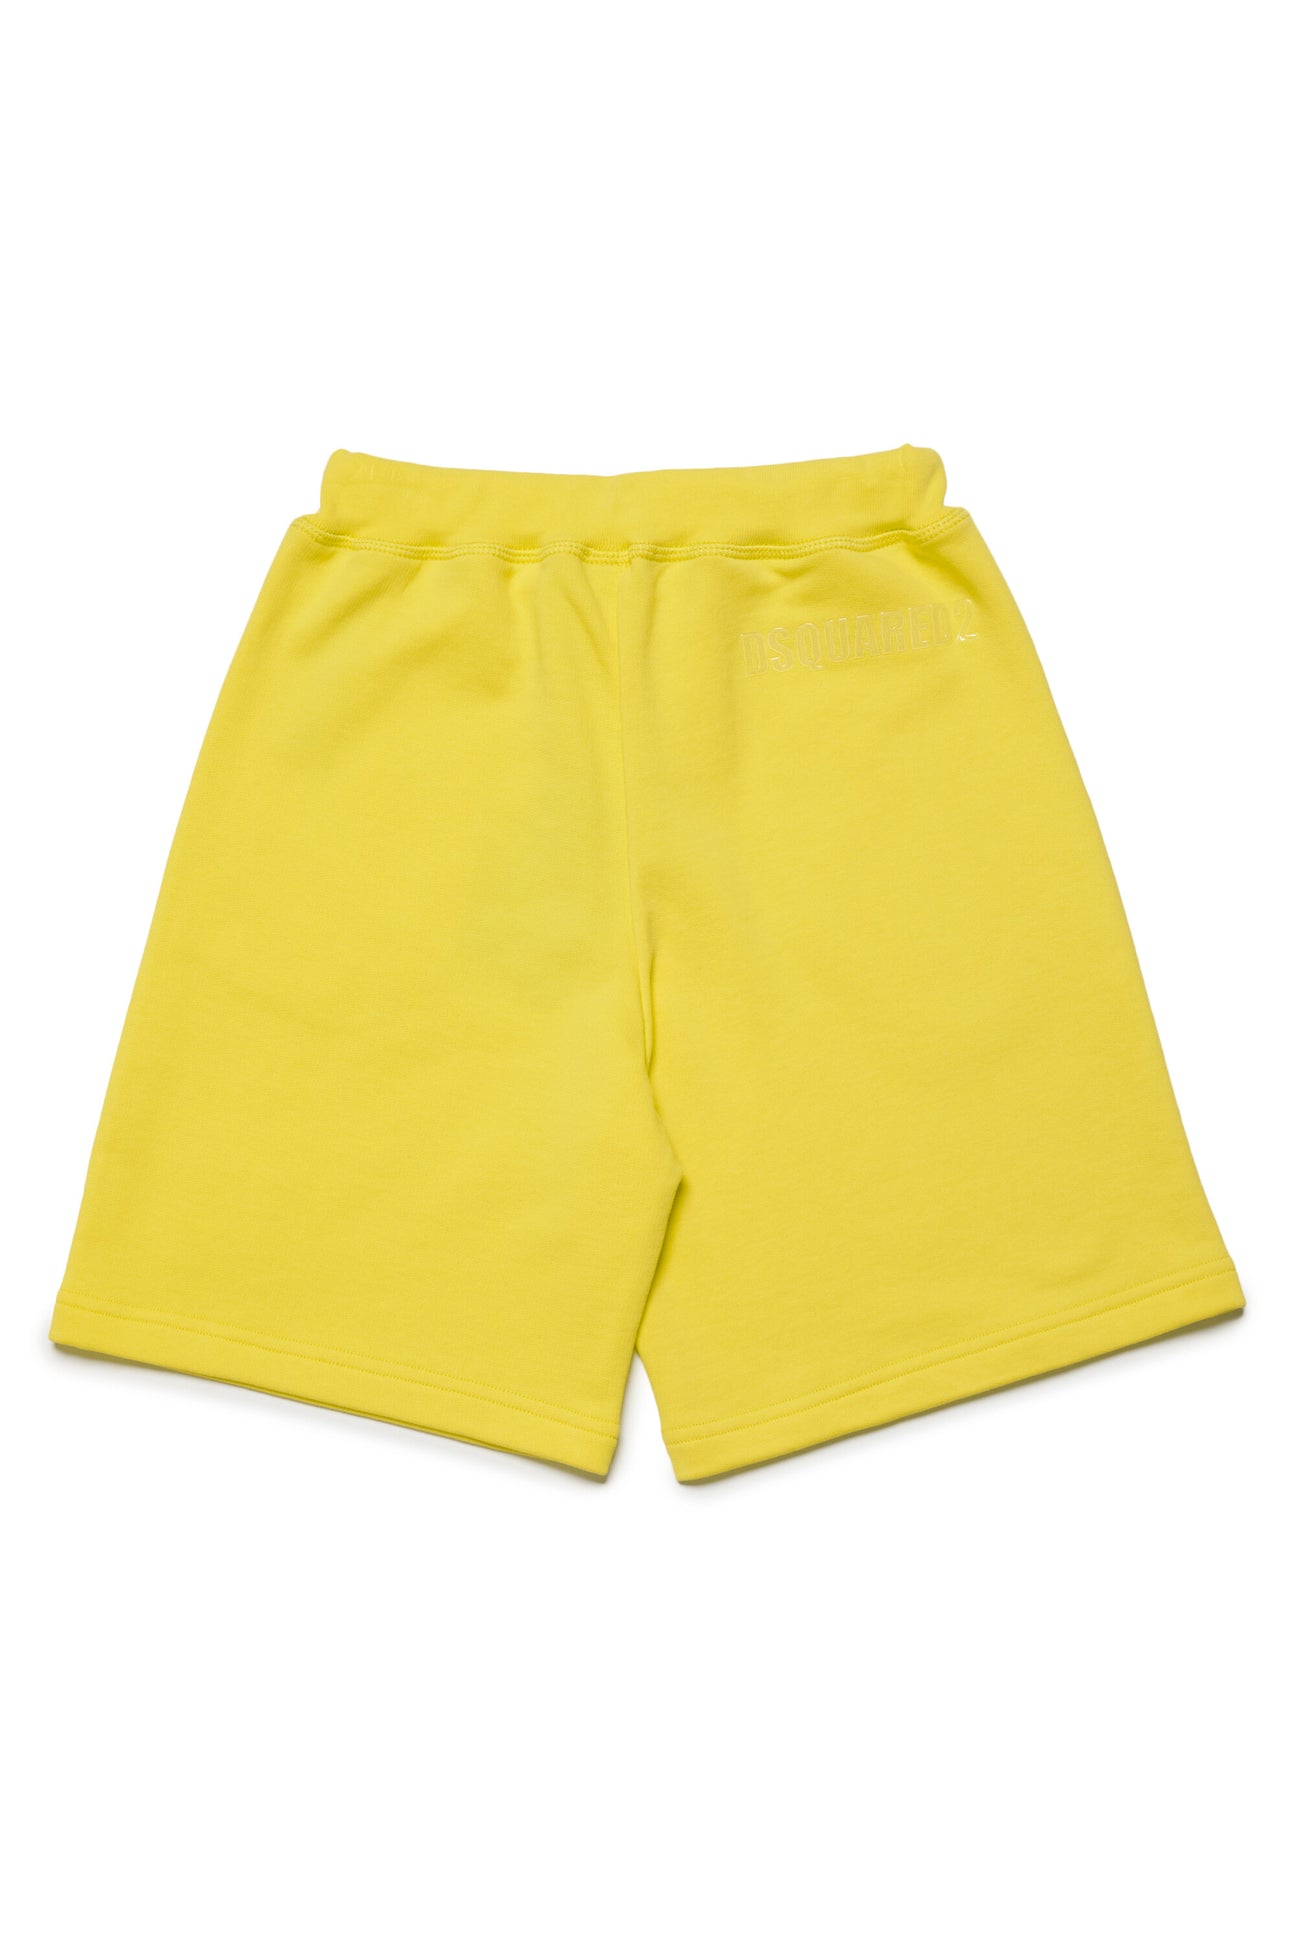 Pantalones cortos en chándal con logotipo claro Pantalones cortos en chándal con logotipo claro